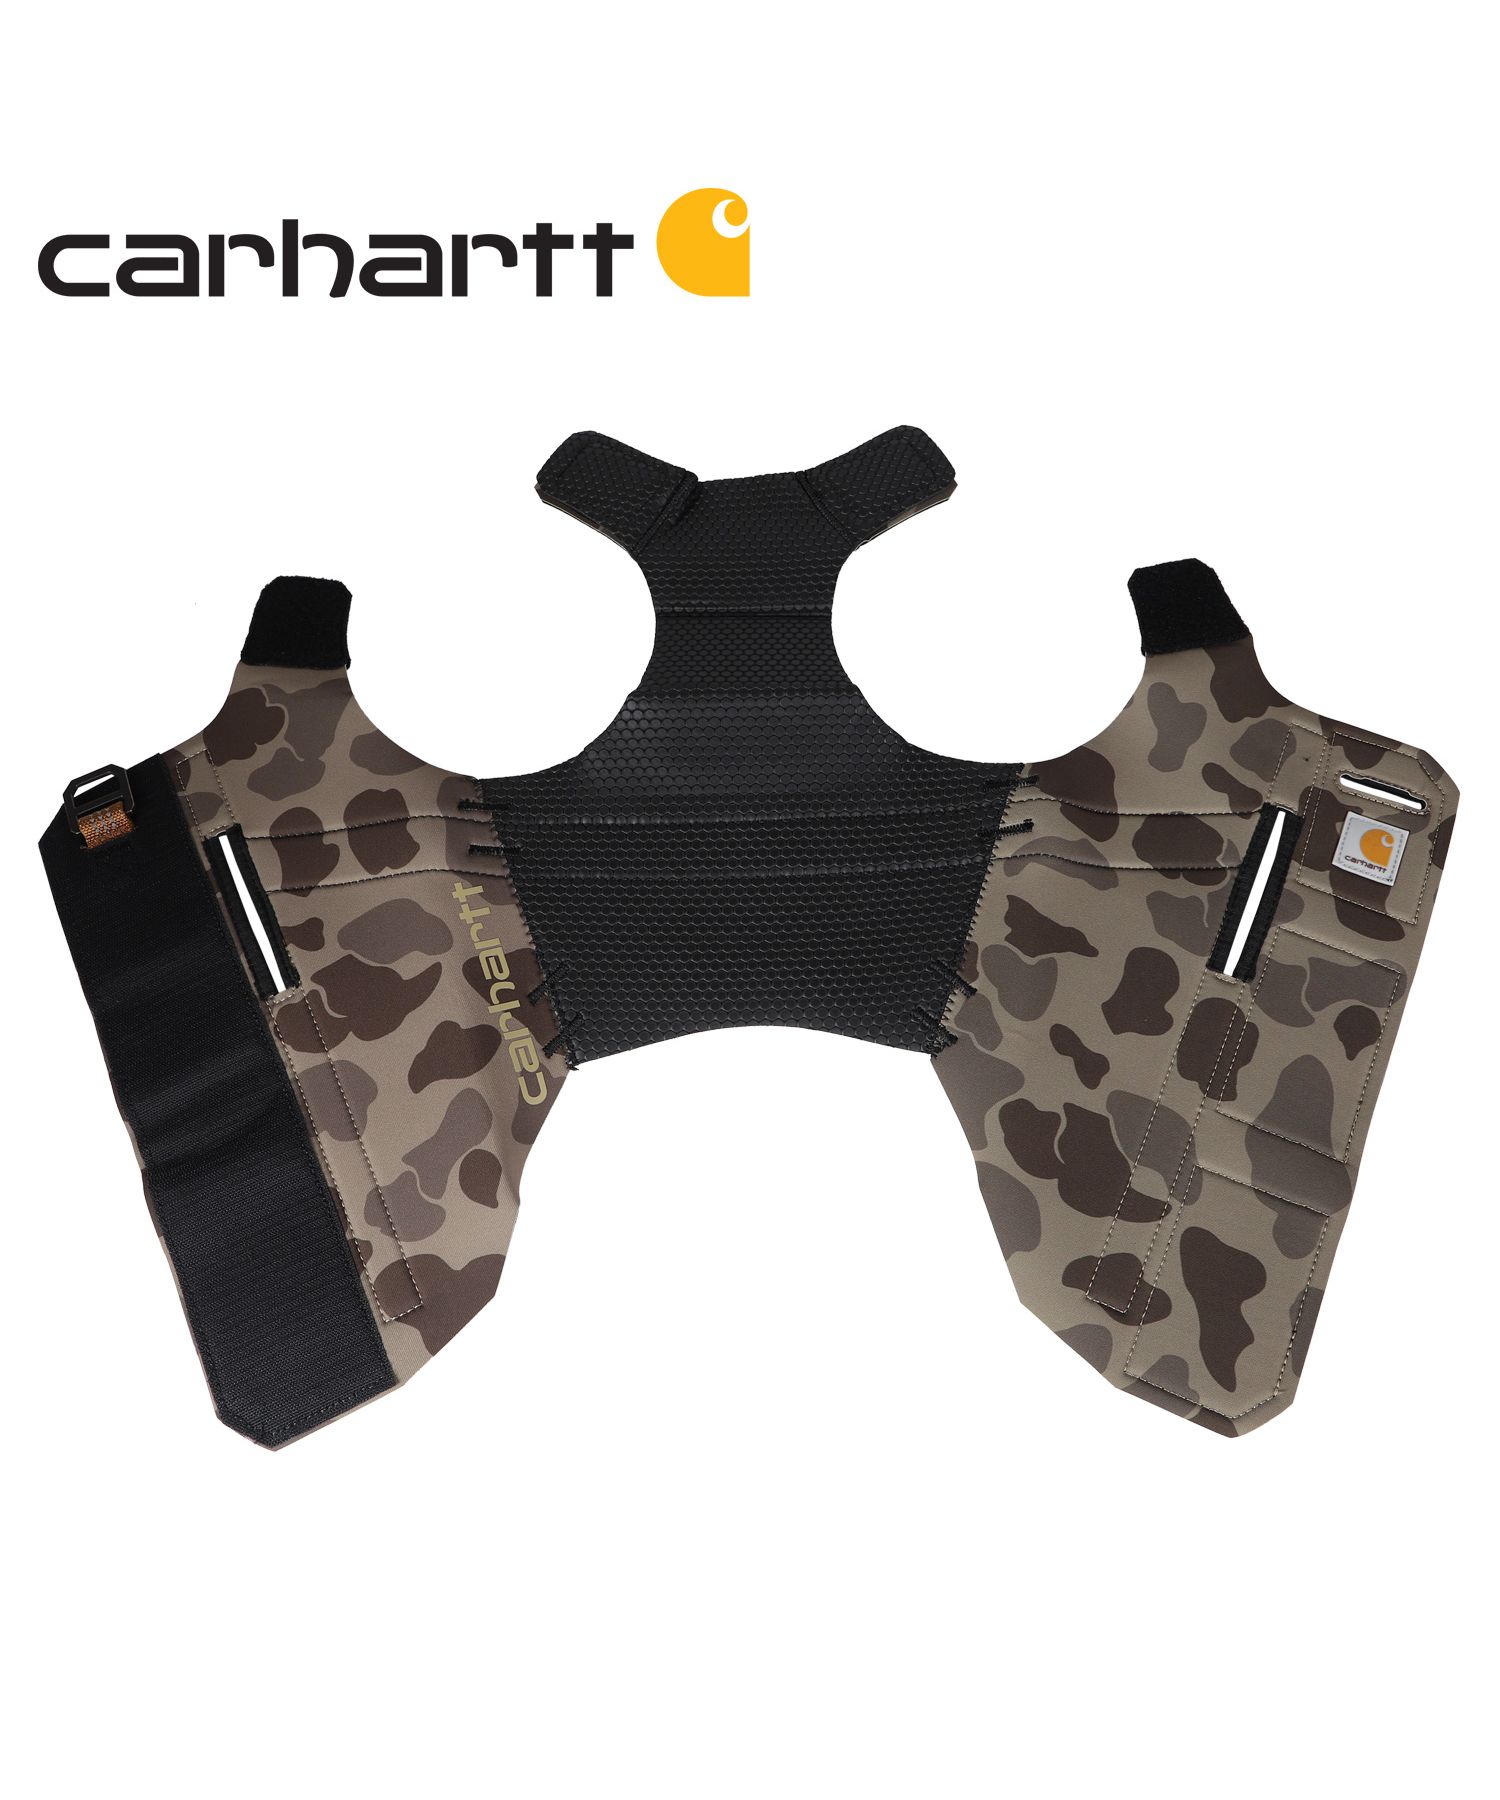 Carhartt(カーハート) ペットベスト ネオプレン製ベスト Mサイズ